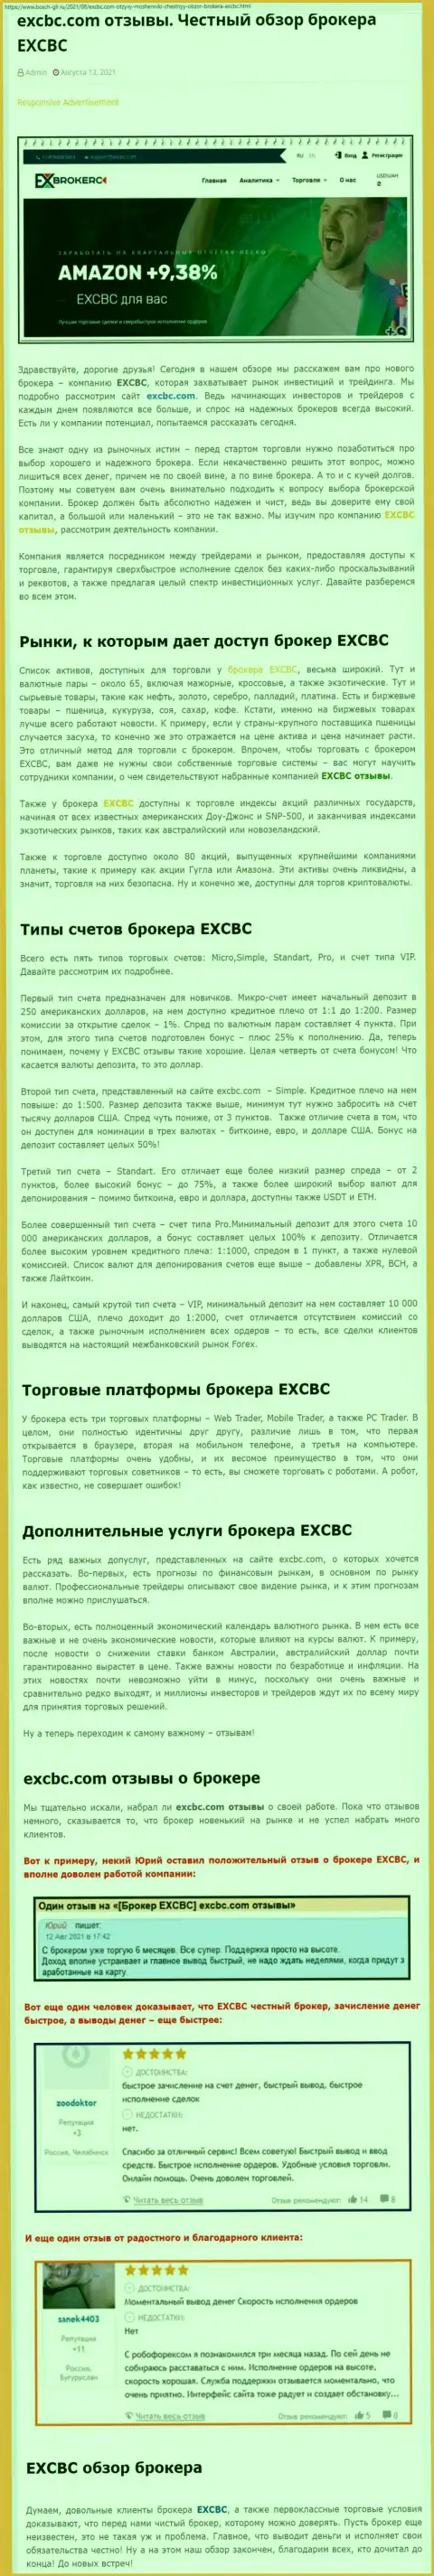 Публикация о форекс-дилере EXCBC на информационном сервисе Бош Глл Ру